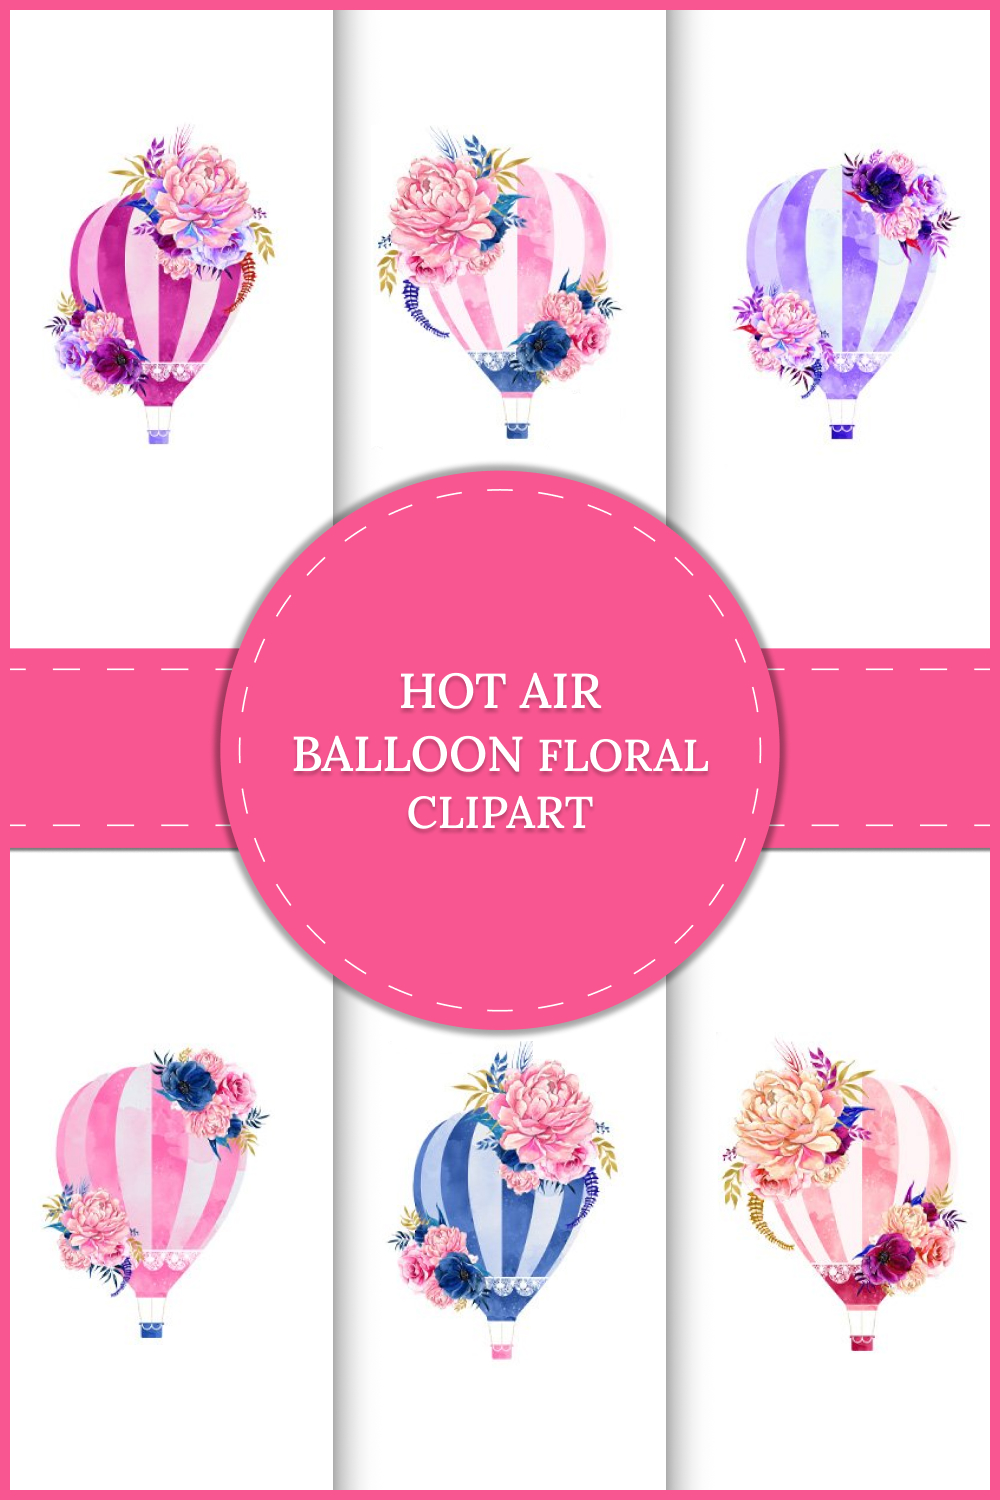 hot air balloon floral clipart 02 50